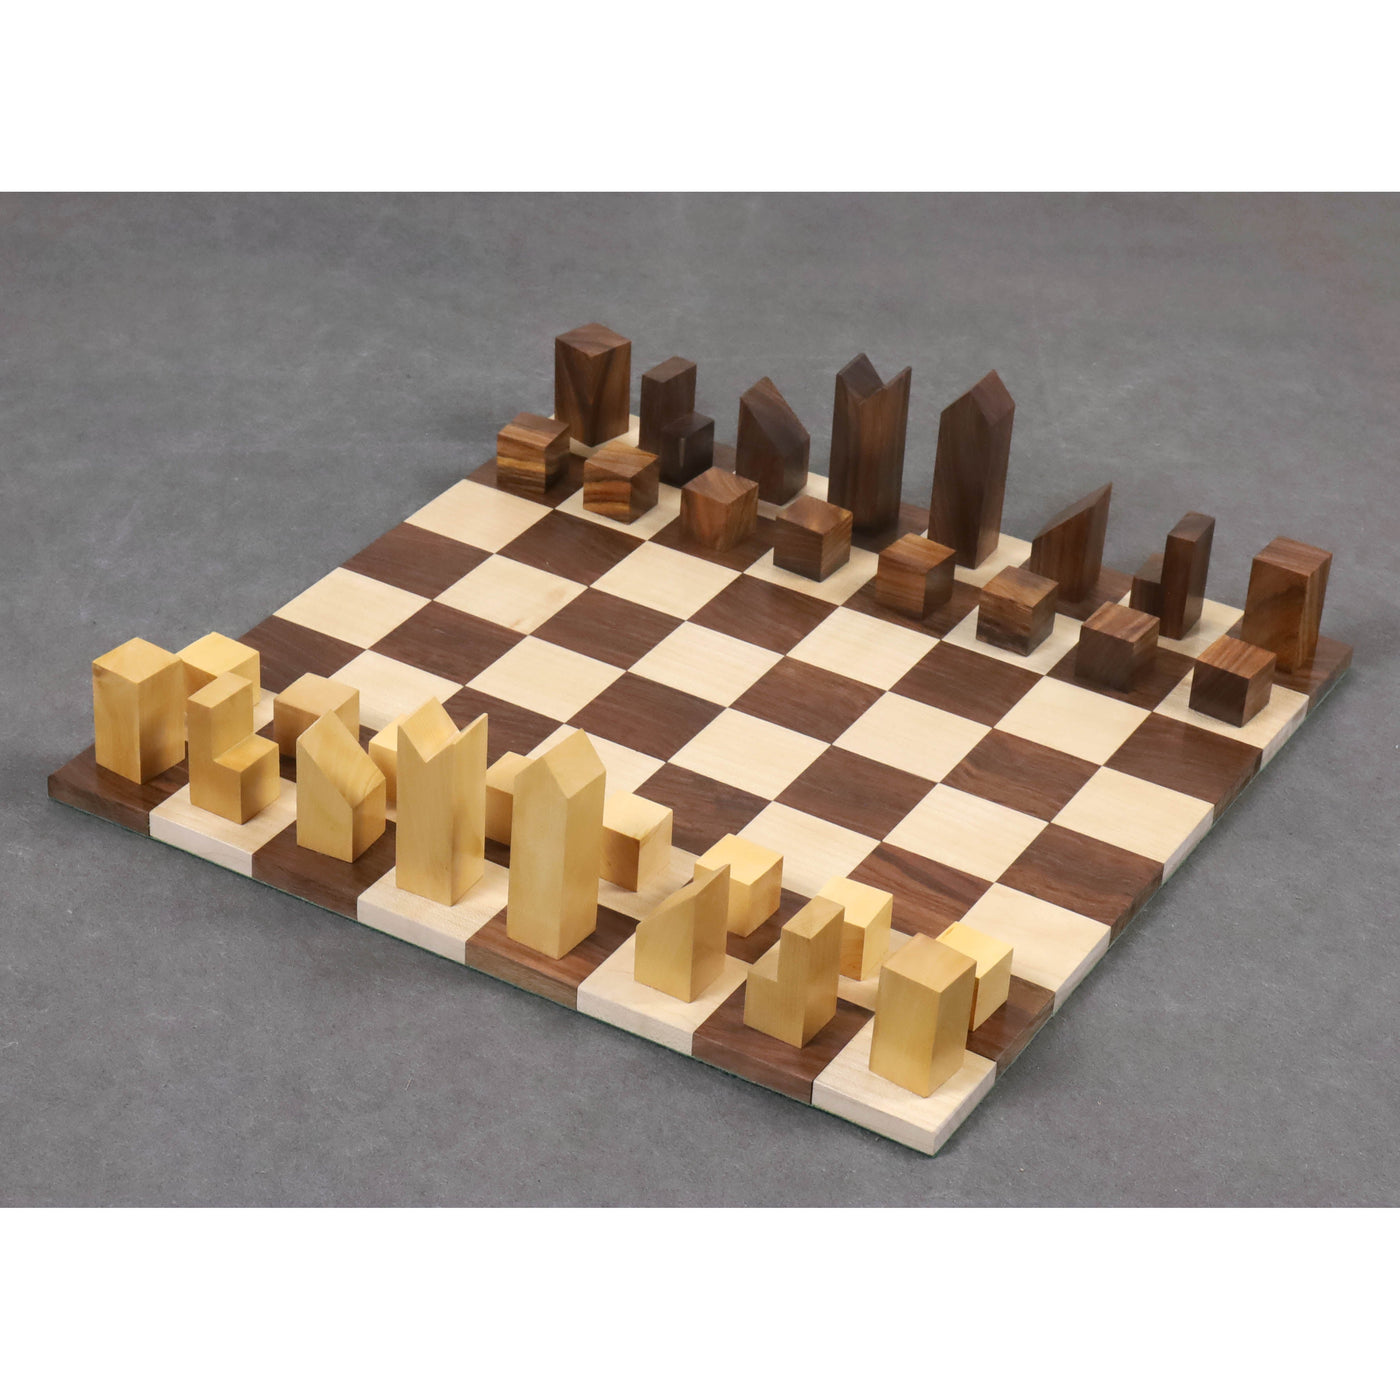 Lanier graham Combo Chess Set